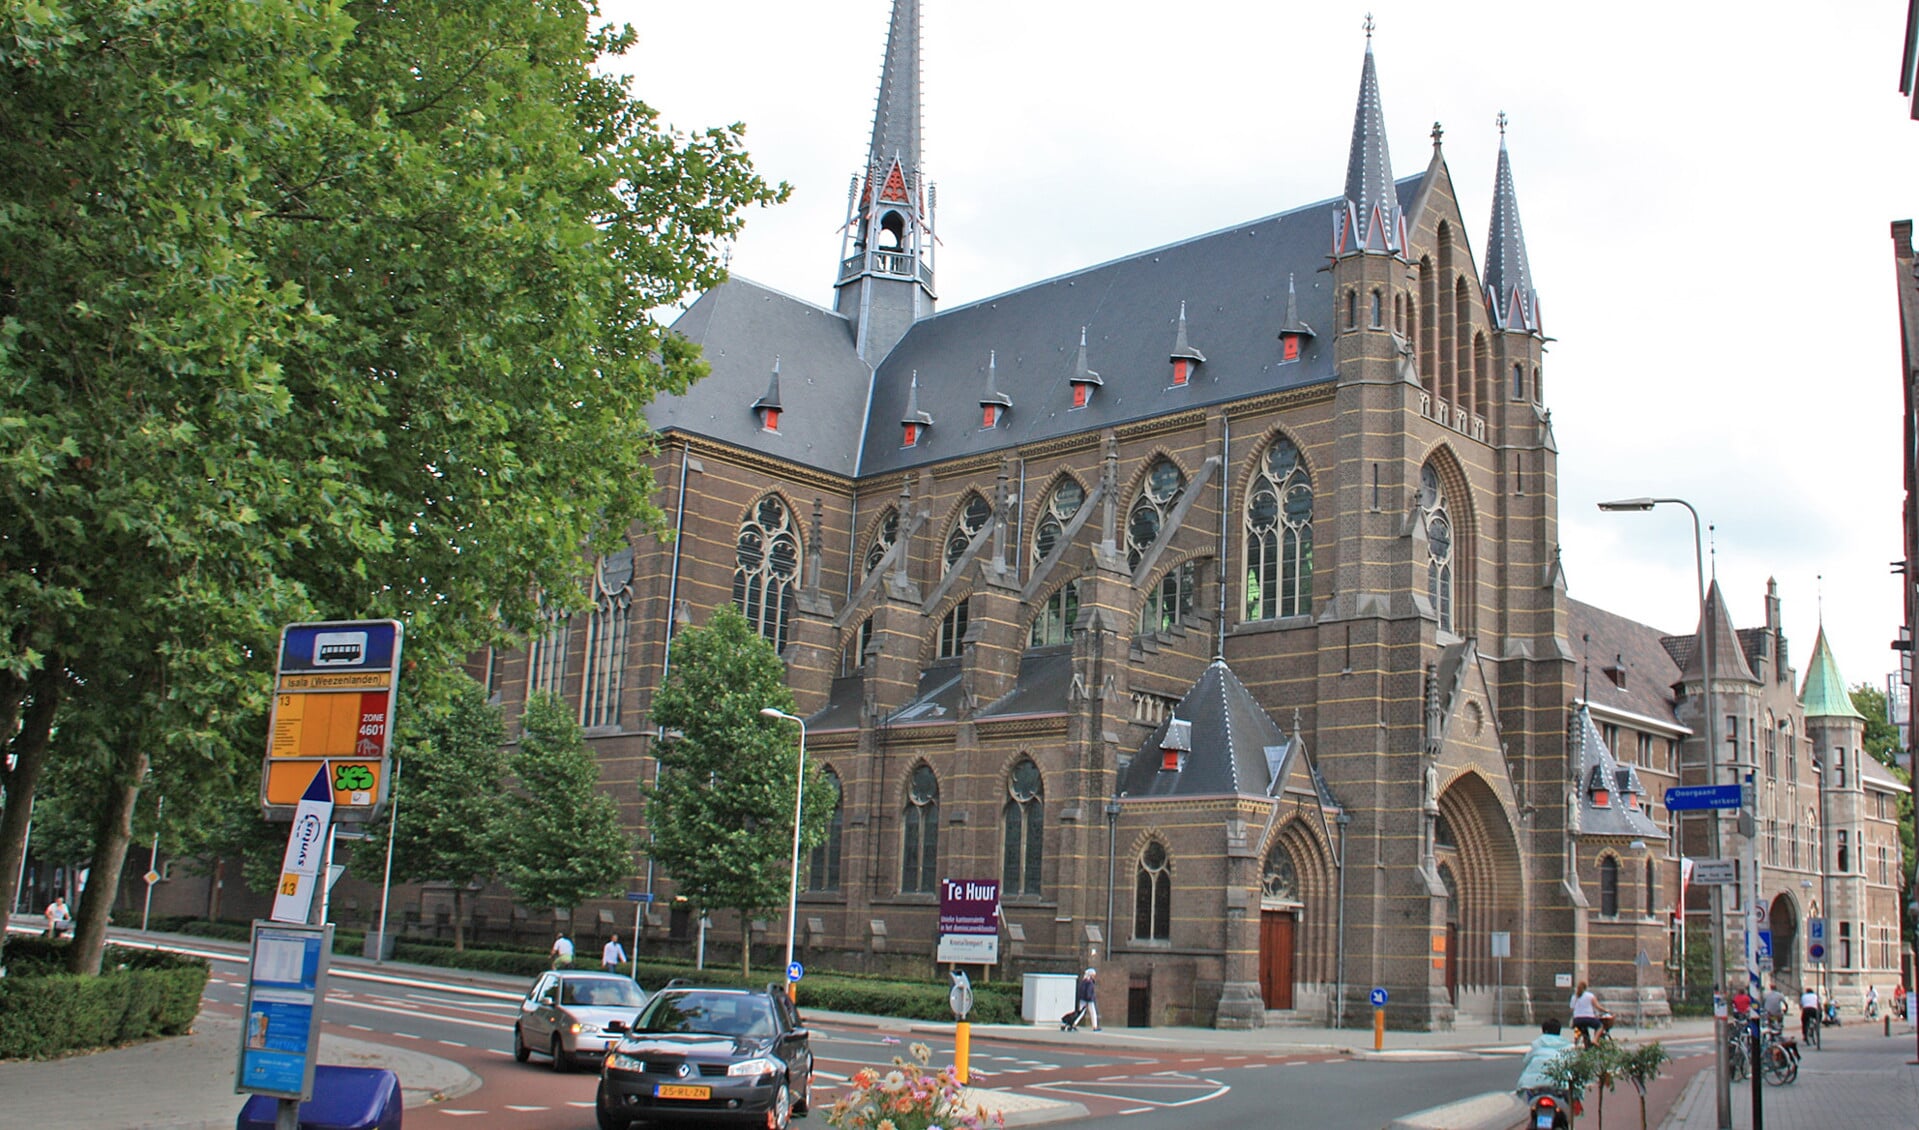 Een bezoek aan de Dominicanenkerk in Zwolle levert volgens een onderzoek voor 70 procent van de bezoekers rust op; 52 procent van de bezoekers die zelf niet gelovig zijn, ervaren er verwondering. De kerkdeuren moeten open.